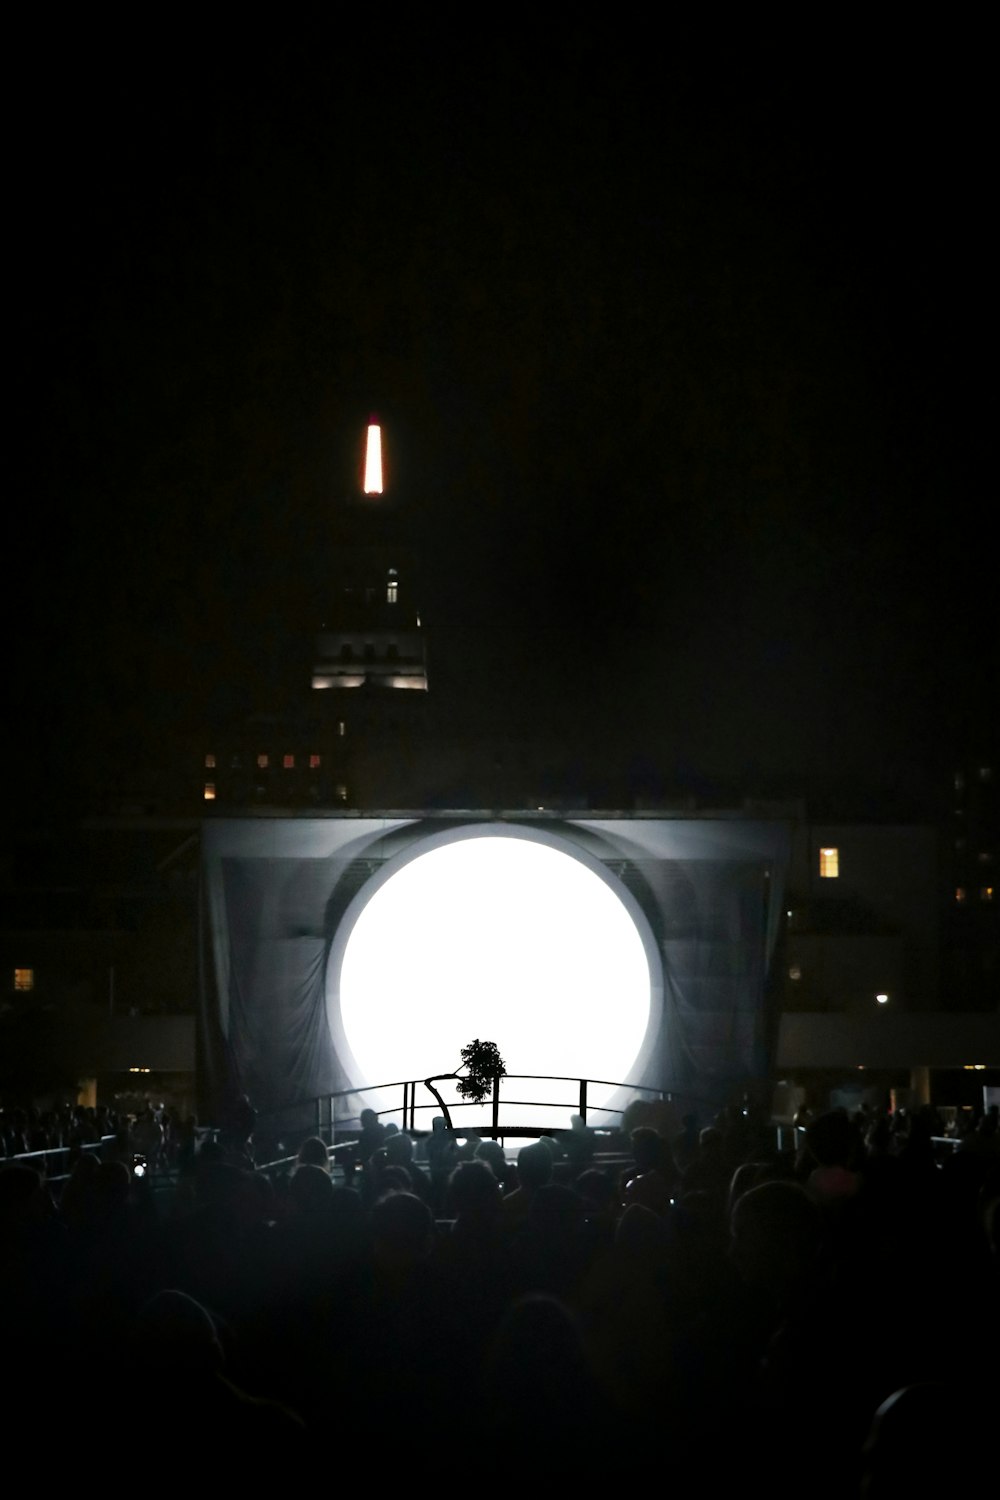 Menschenmenge vor beleuchteter Bühne bei Nacht